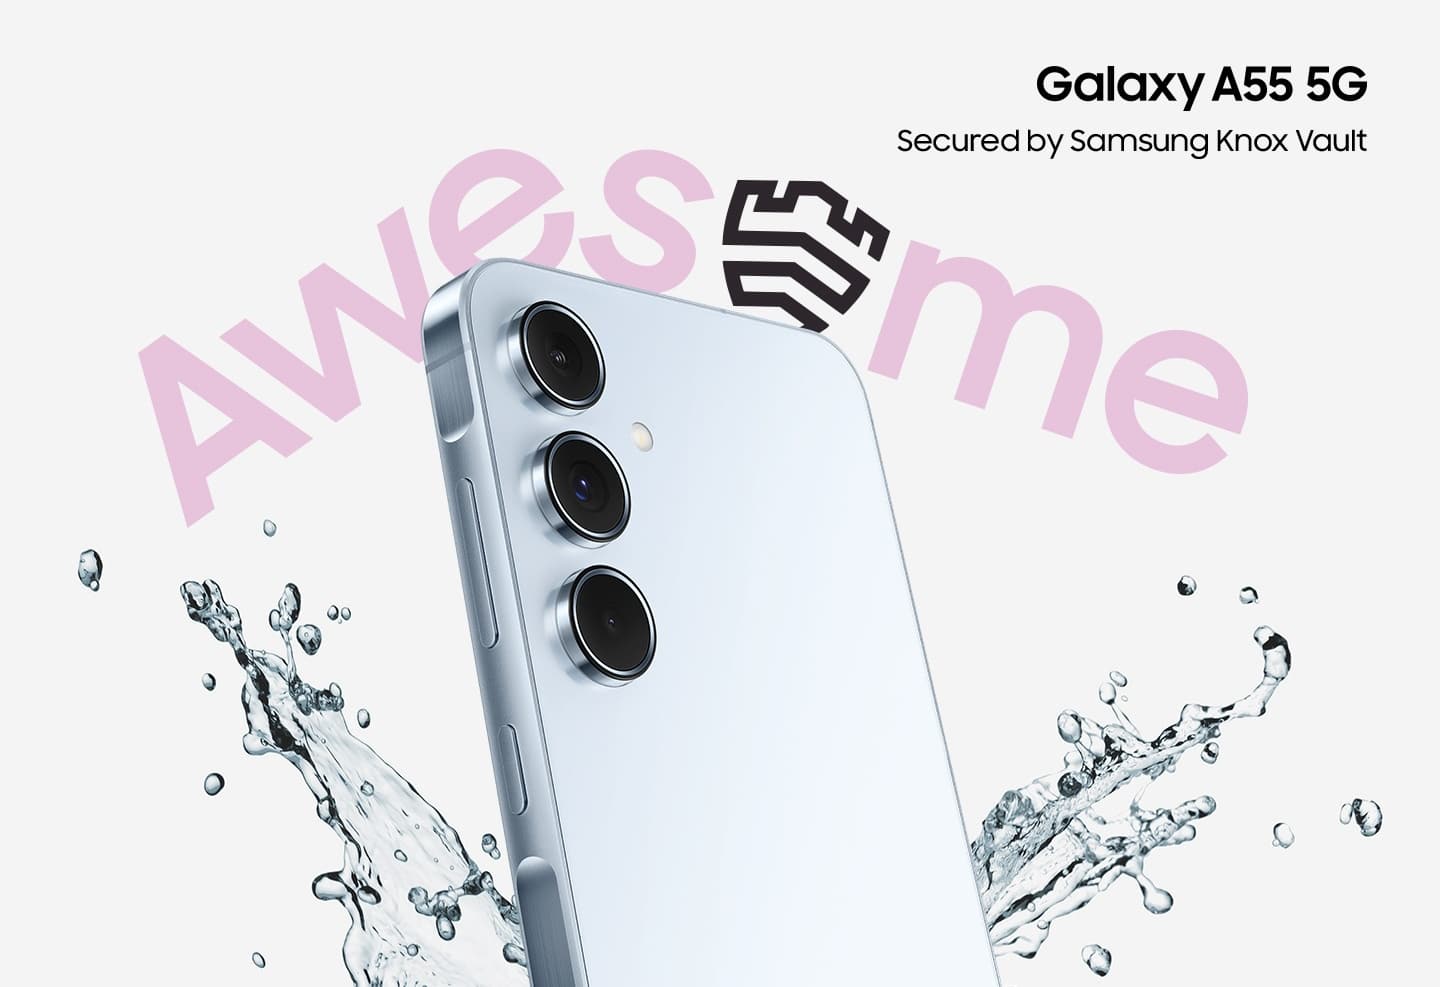 Samsung Galaxy A55 5G mit VErtrag in den Netzen von Telekom, Vodafone, o2 Telefónica und 1&1